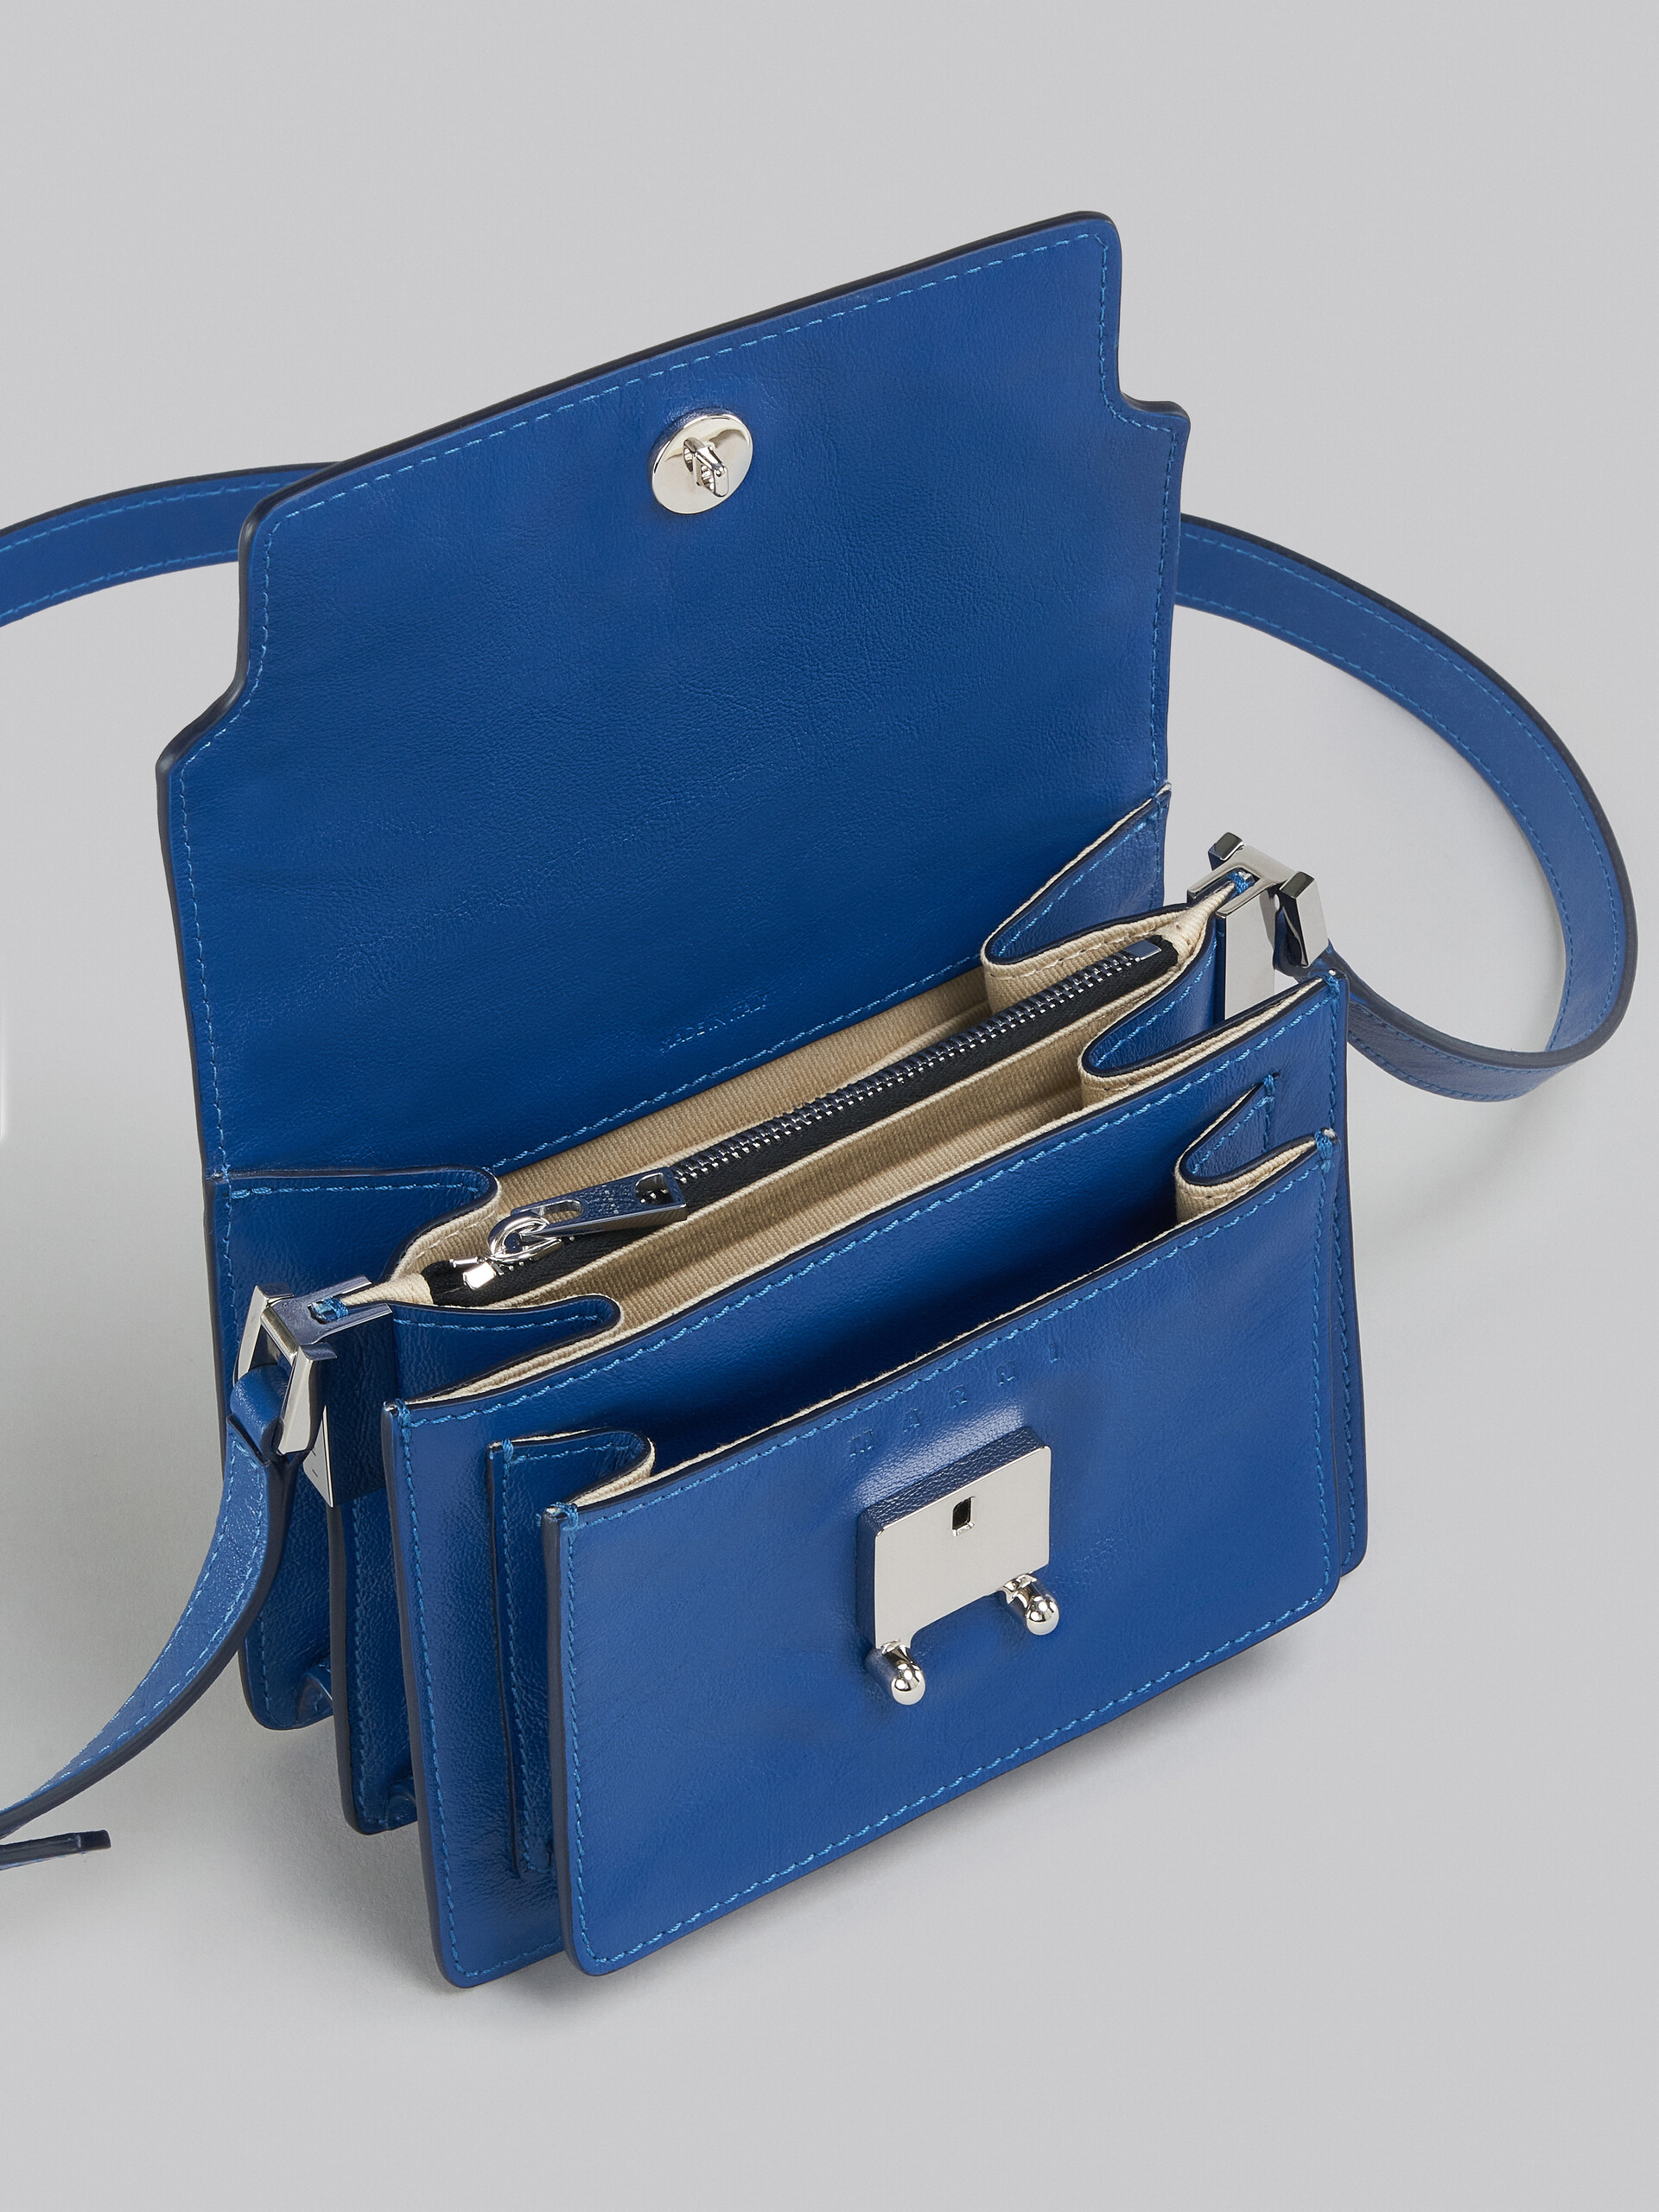 Trunk Soft Mini Bag in blue leather - Shoulder Bag - Image 4